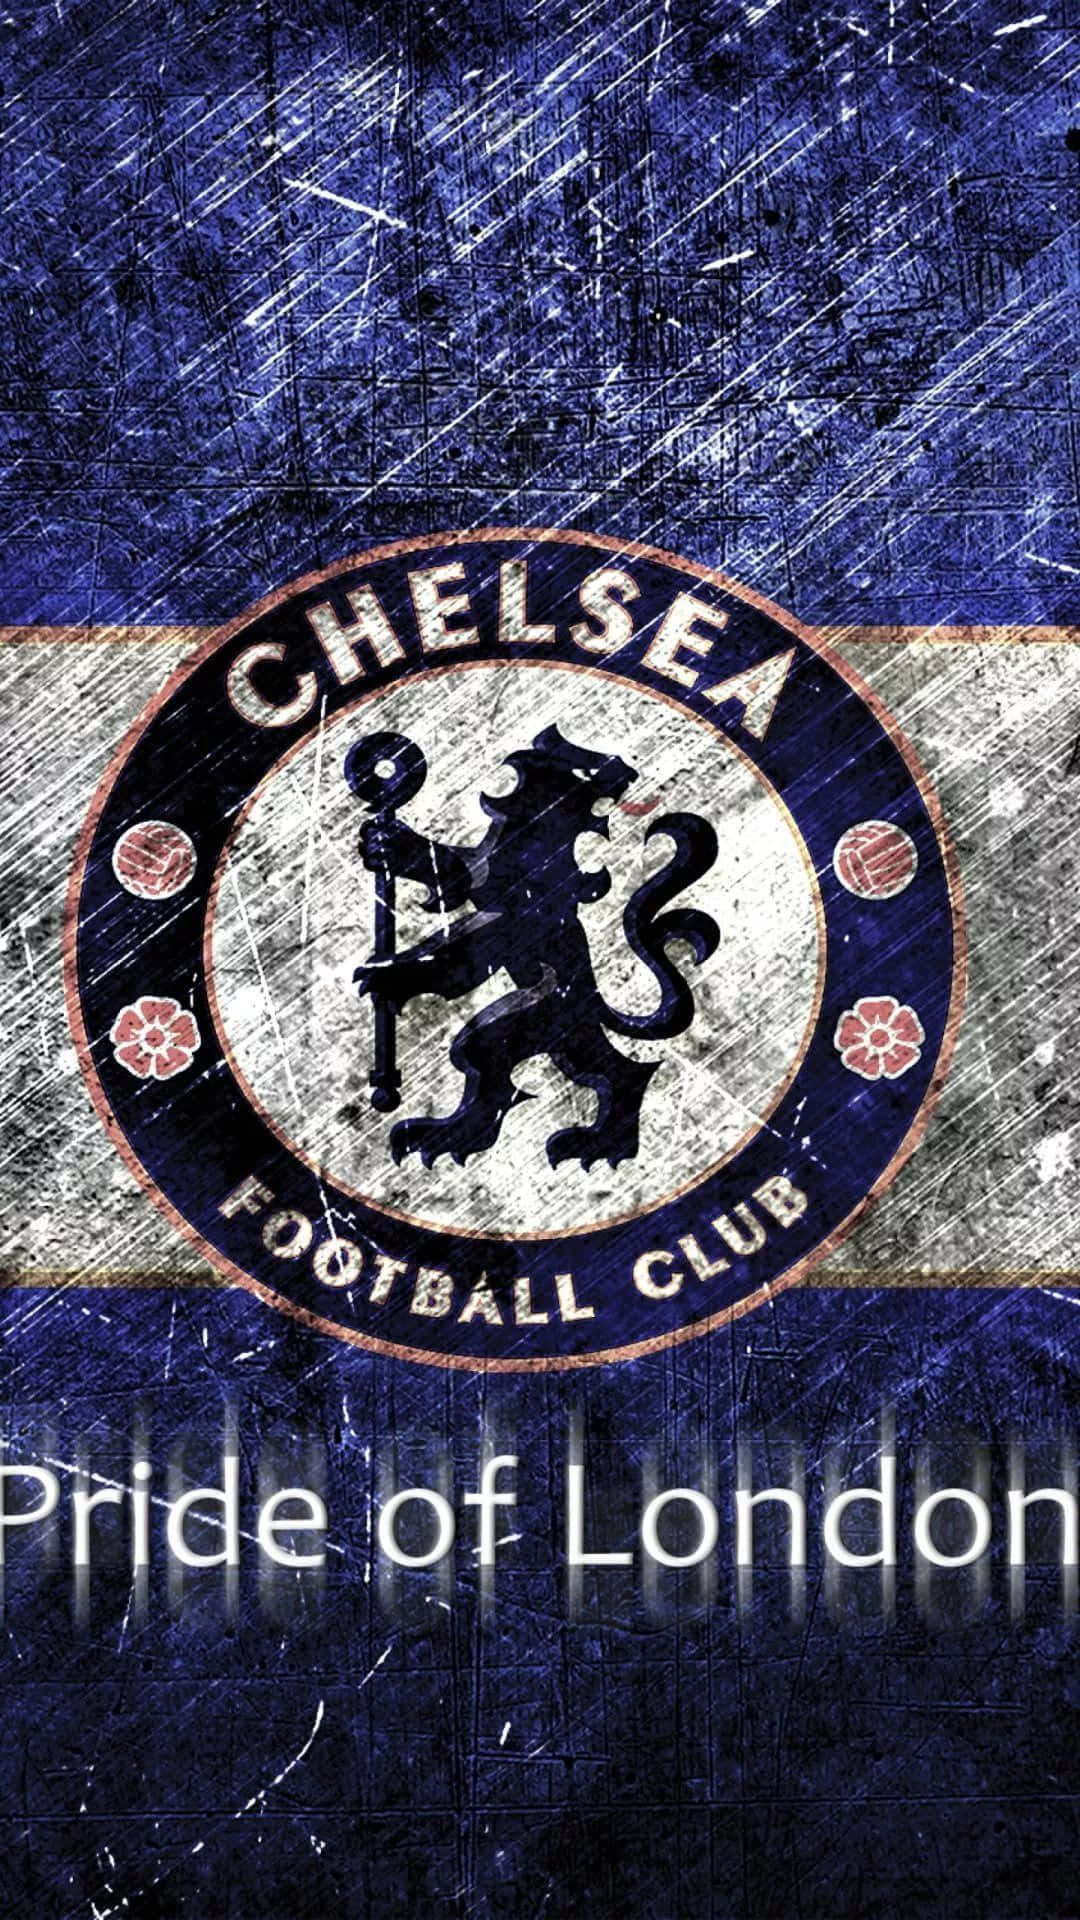 Chelsea FC Ære af London vægbillede Wallpaper